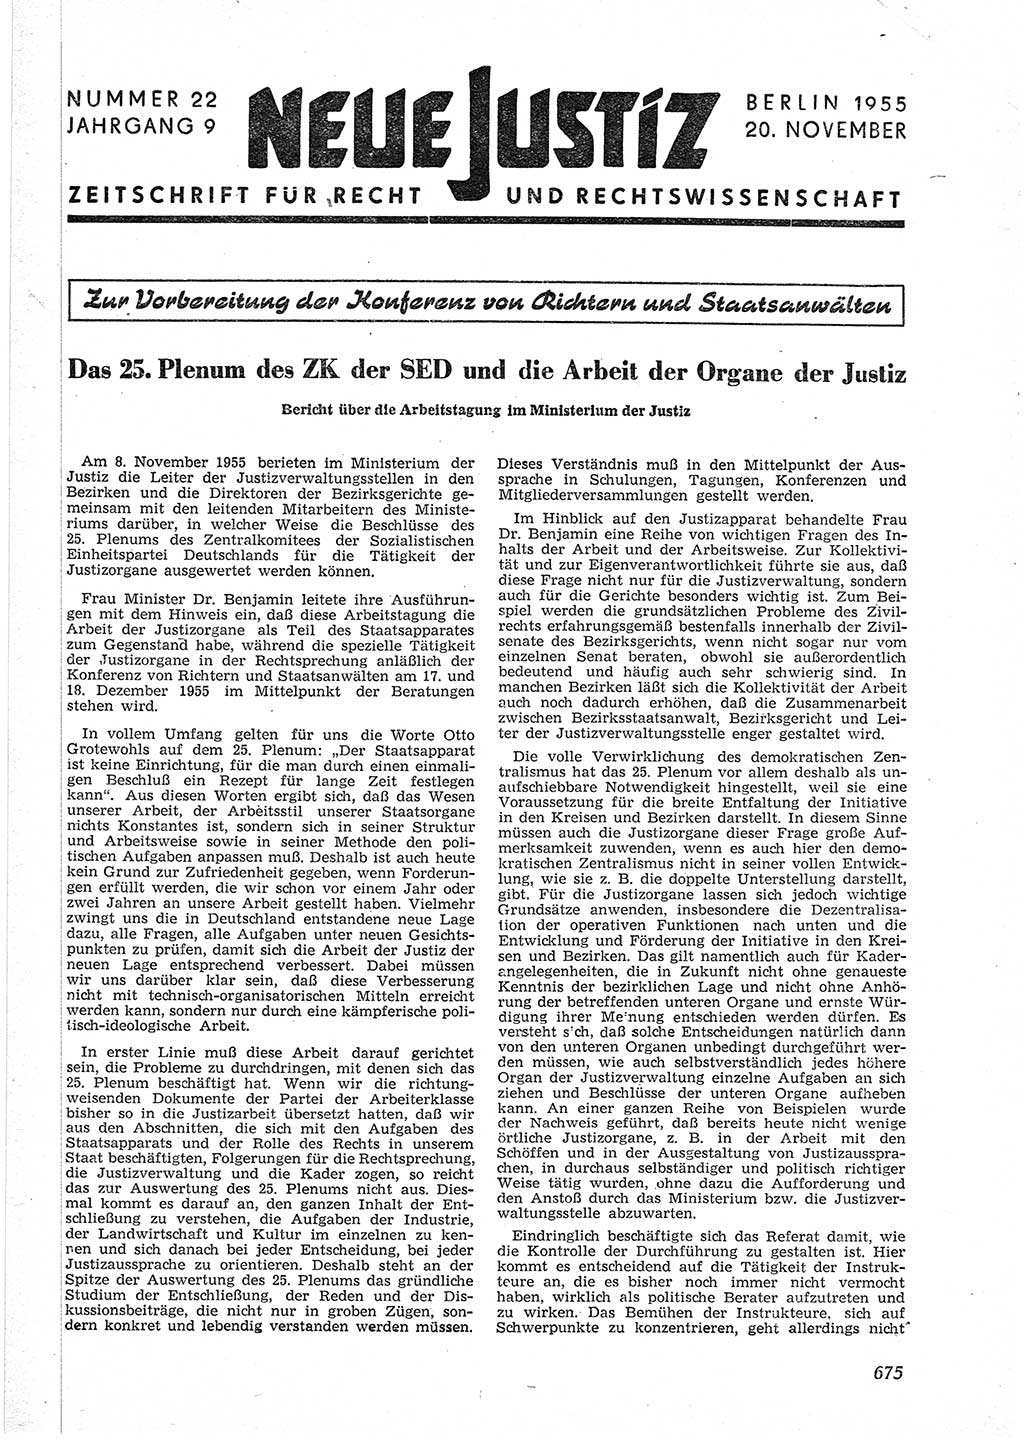 Neue Justiz (NJ), Zeitschrift für Recht und Rechtswissenschaft [Deutsche Demokratische Republik (DDR)], 9. Jahrgang 1955, Seite 675 (NJ DDR 1955, S. 675)